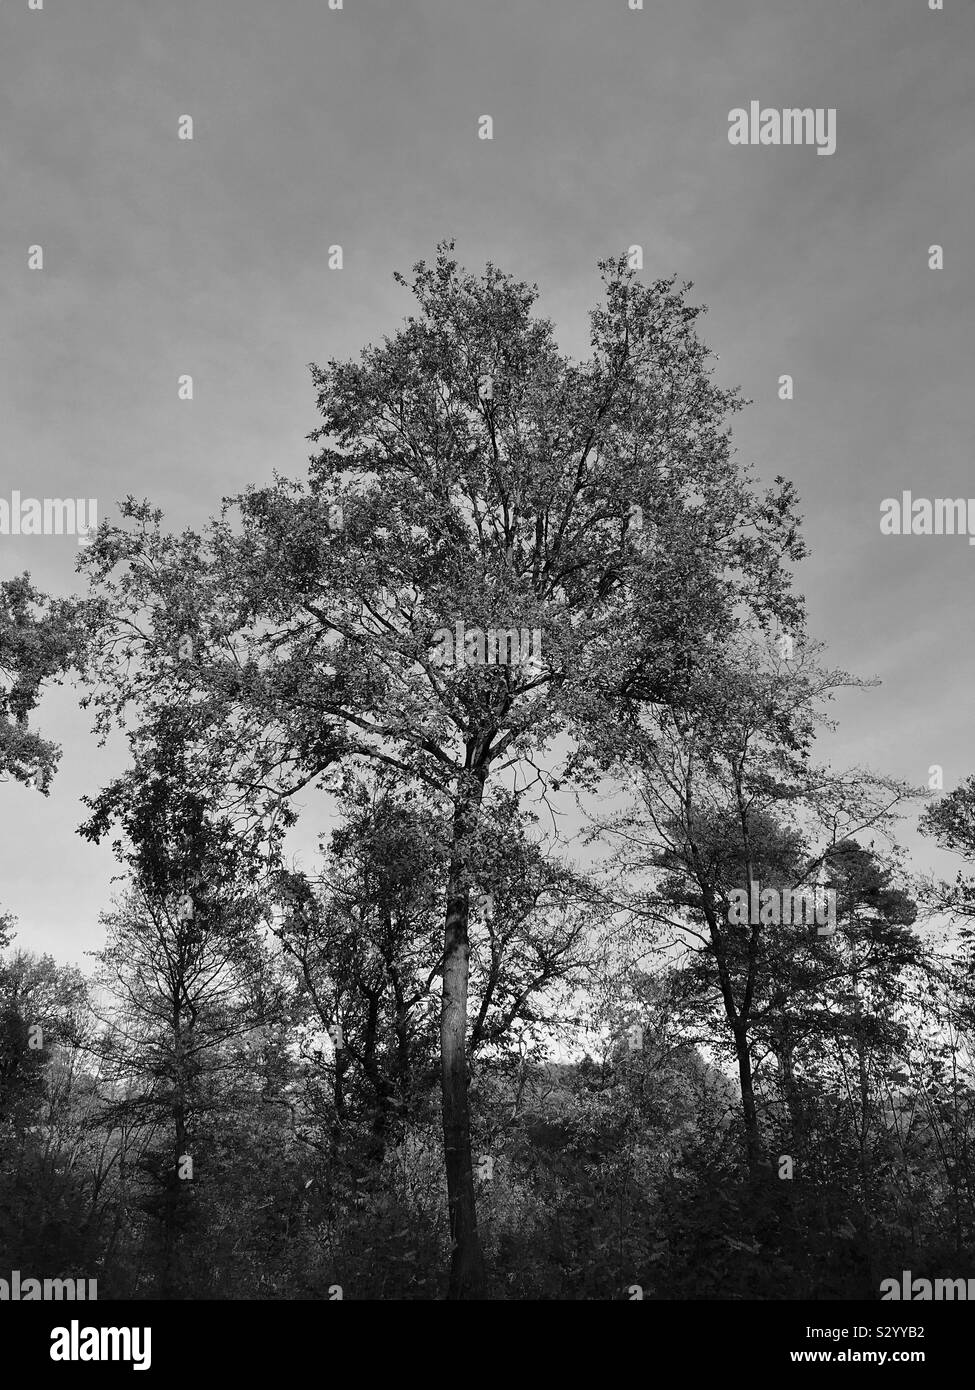 Arbre de chêne noir et blanc, dans le nord de l'Italie Banque D'Images